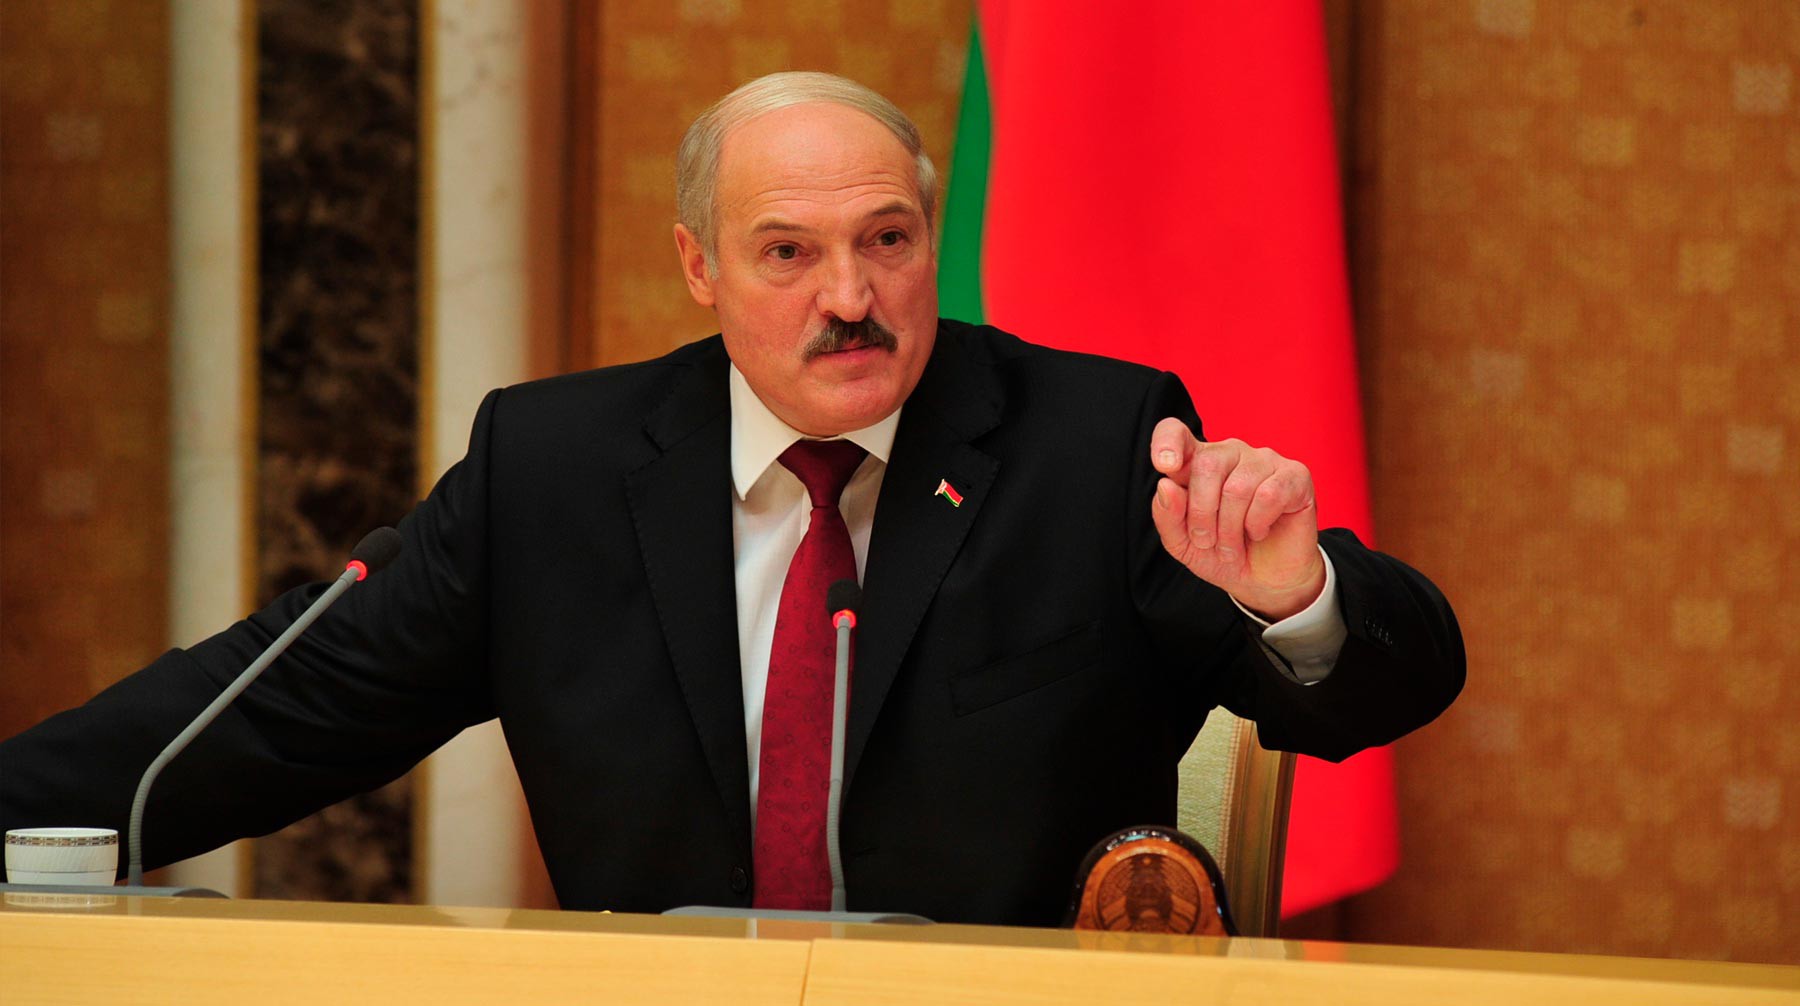 Dailystorm - «Он нервный и выборы сложные»: главред «КП» объяснил «наезд» Лукашенко на СМИ